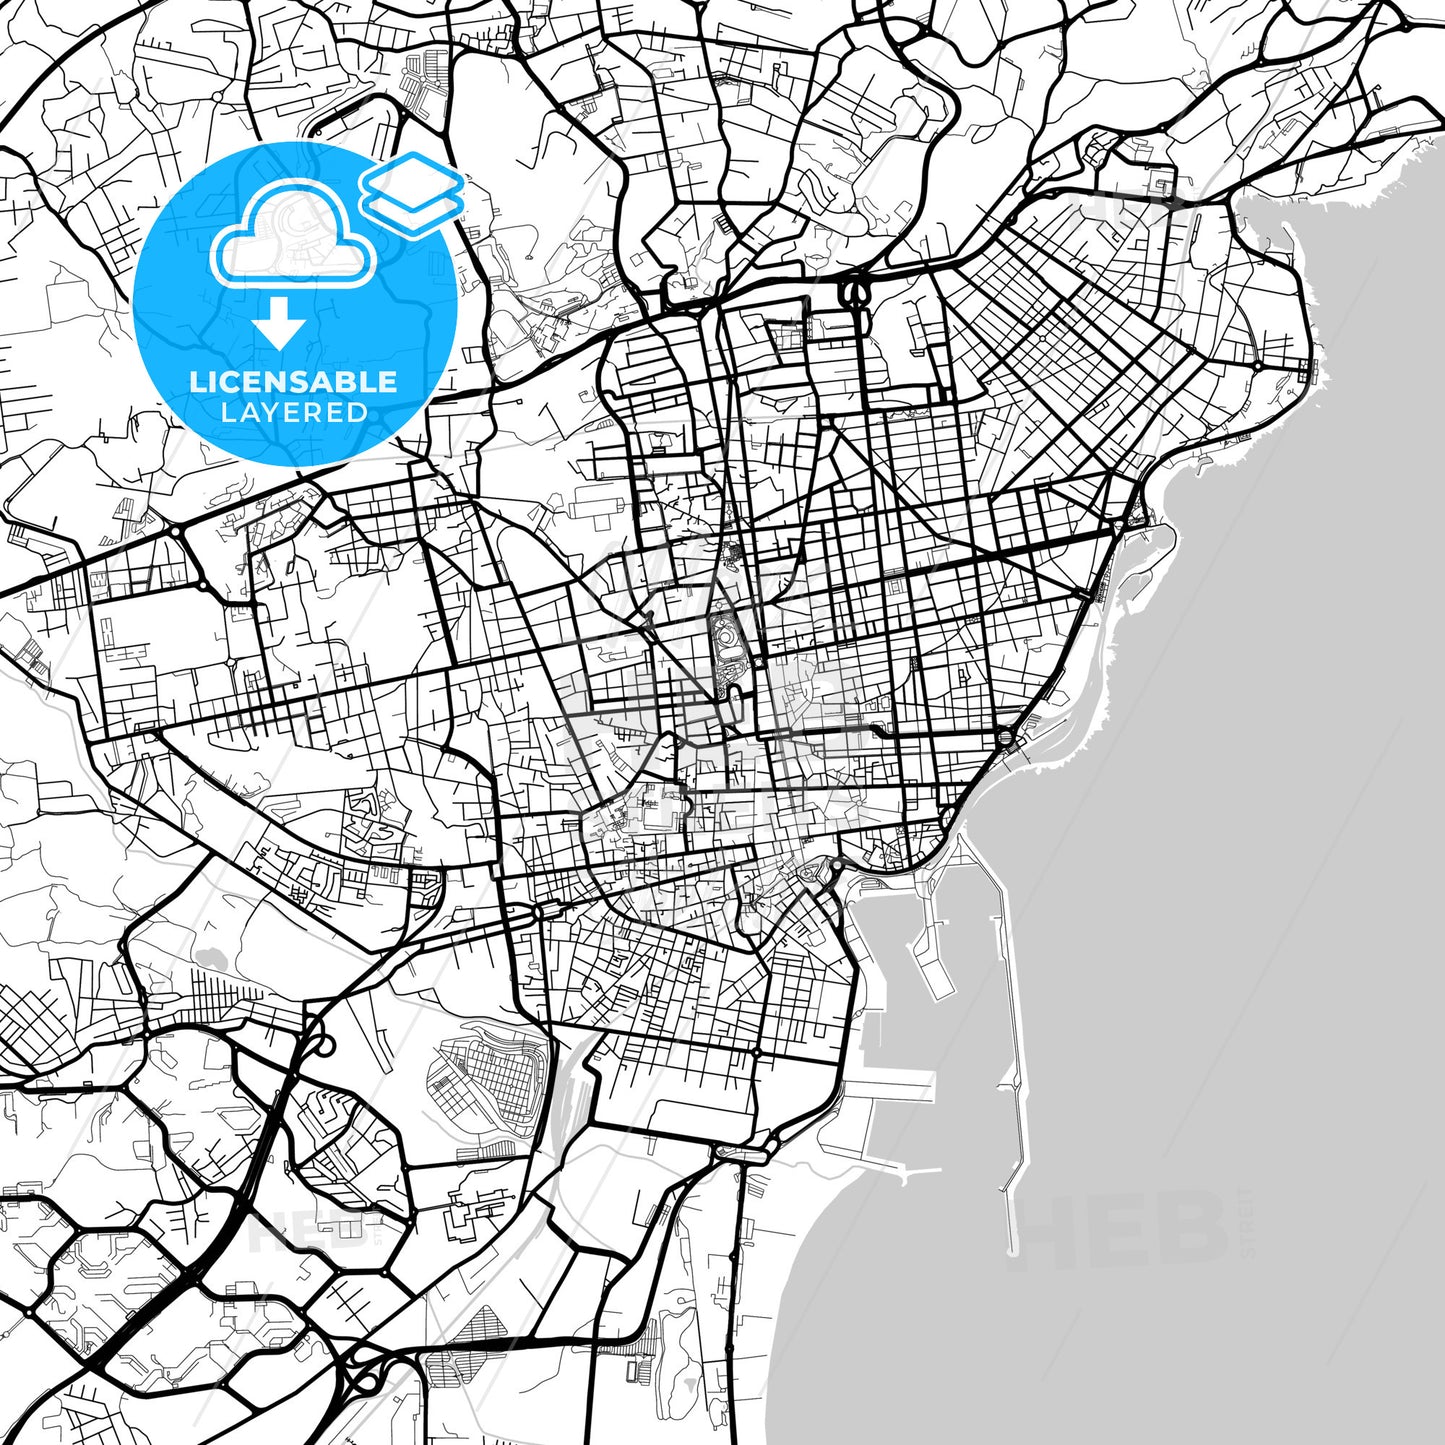 Layered PDF map of Catania, Sicily, Italy